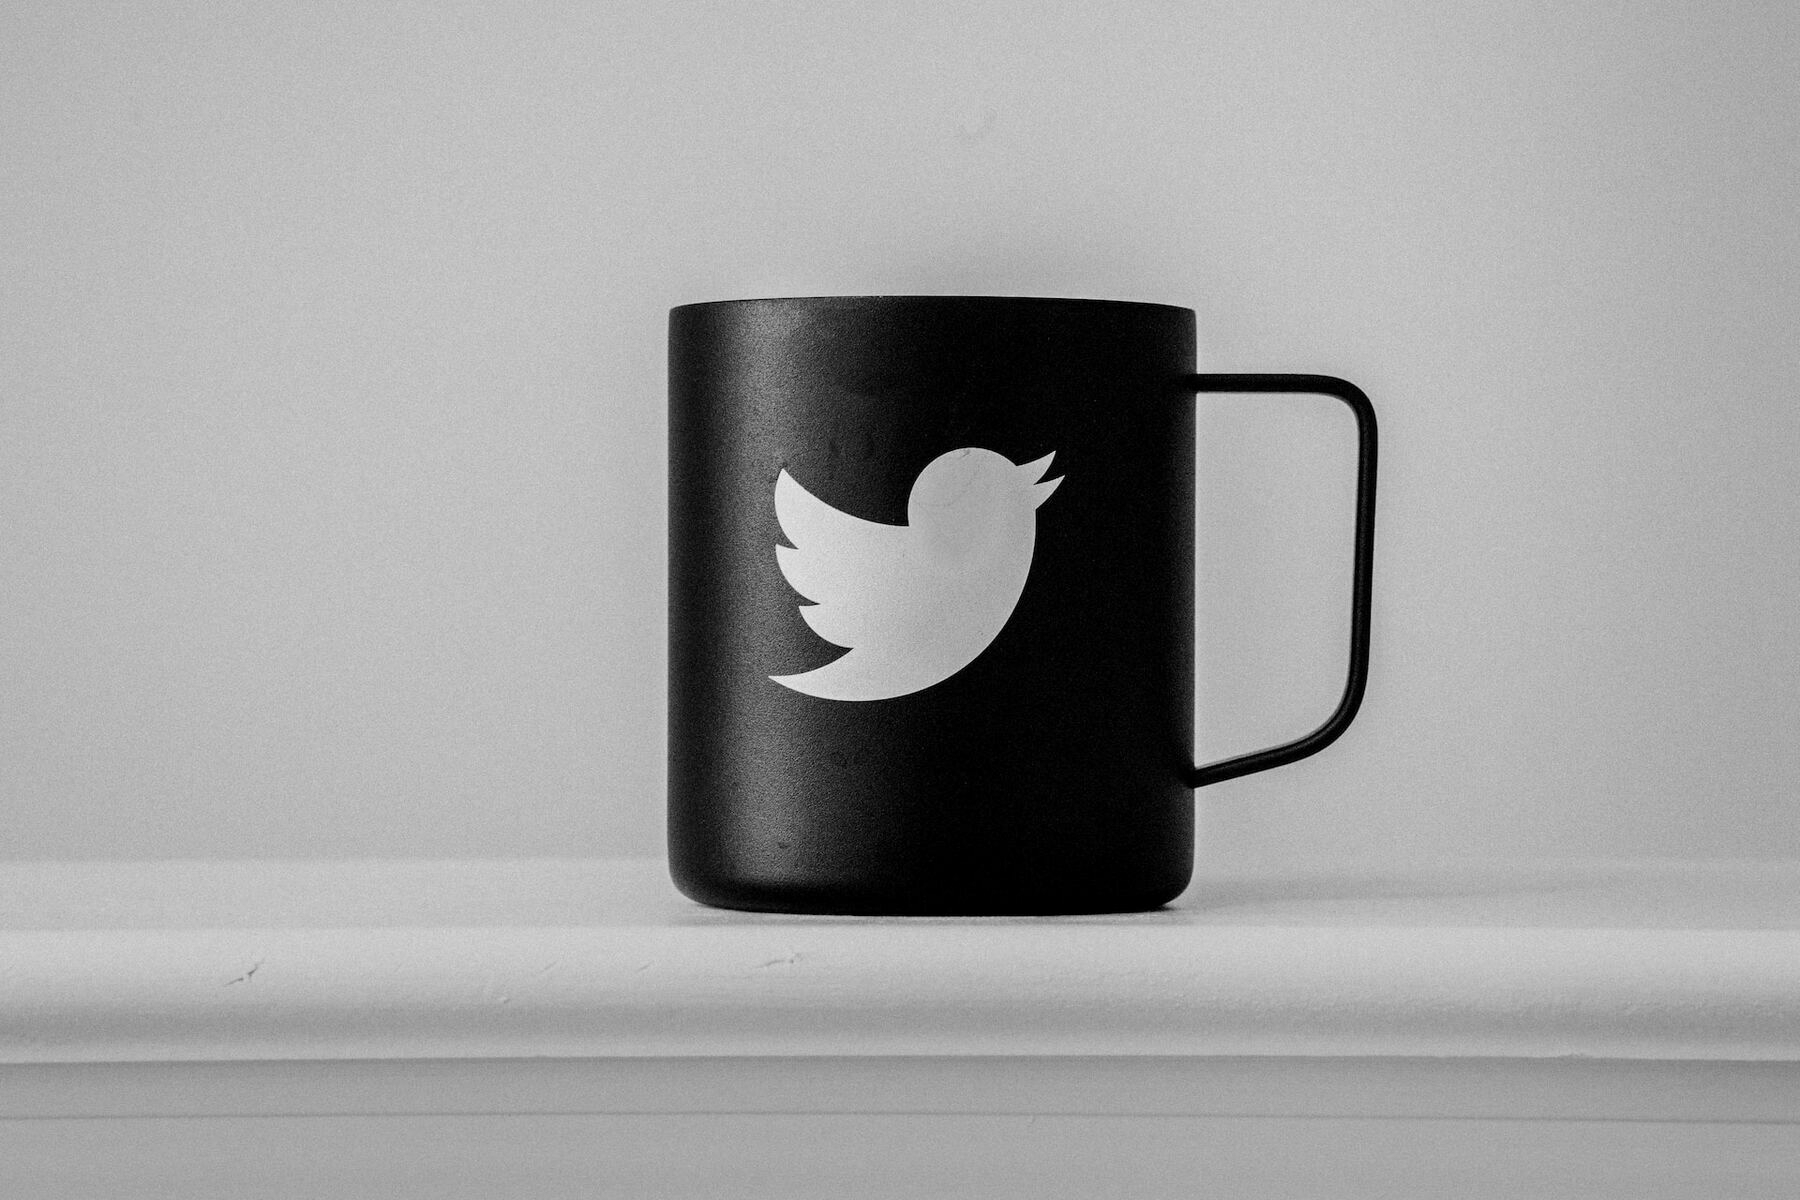 Black mug featuring white Twitter logo